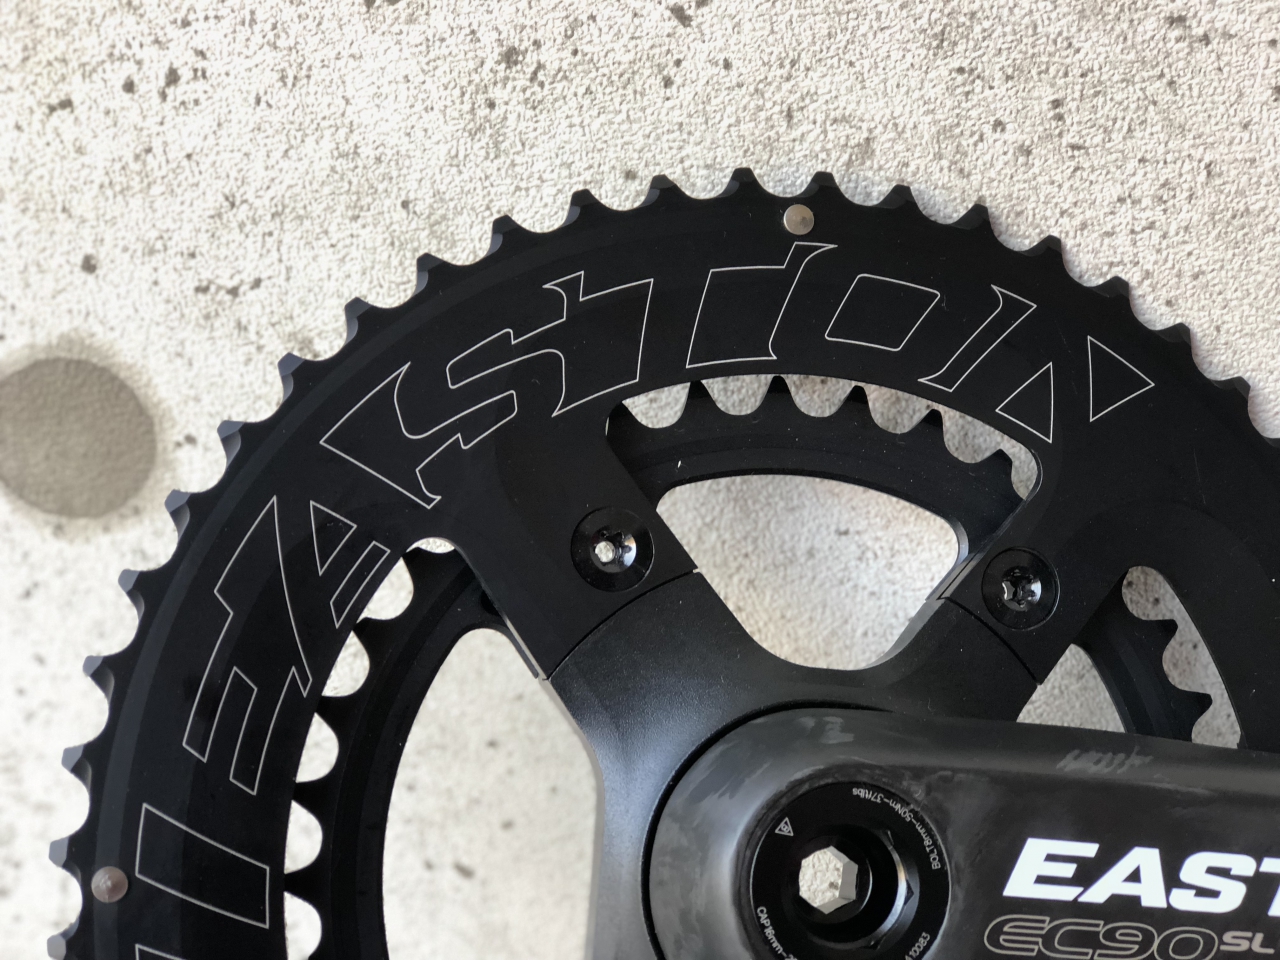 バイクの軽量化！EASTON EC90 SLクランク - Climb cycle sports